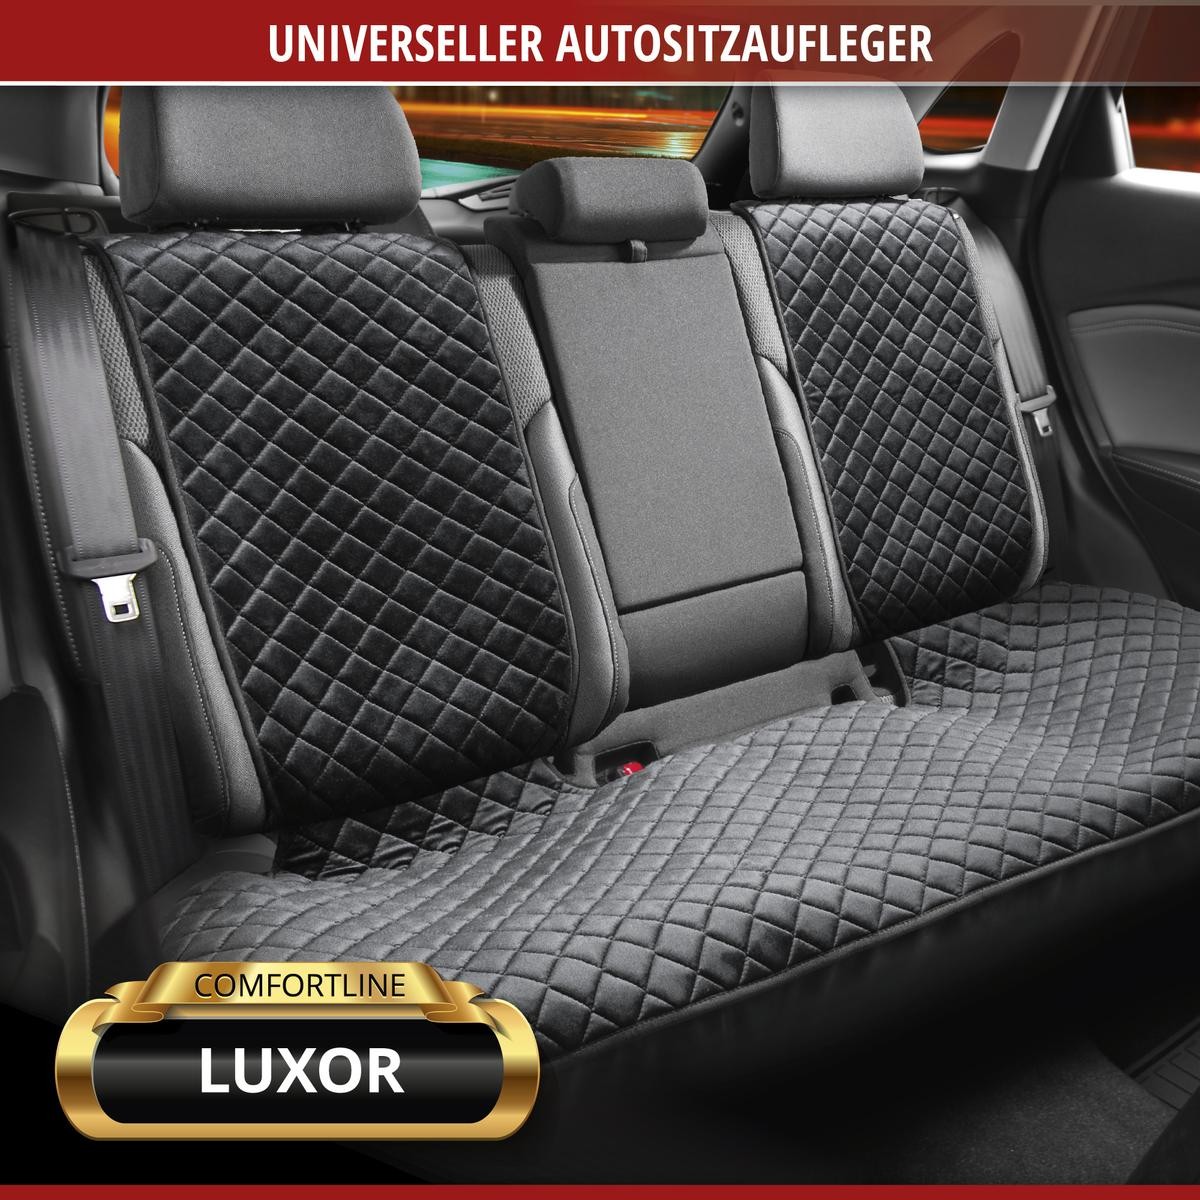 Couvre-siège auto WALSER Air Flow, protection de siège ergonomique,  protection lombaire, couvre-siège universel pour voiture, couleur: noir  13983